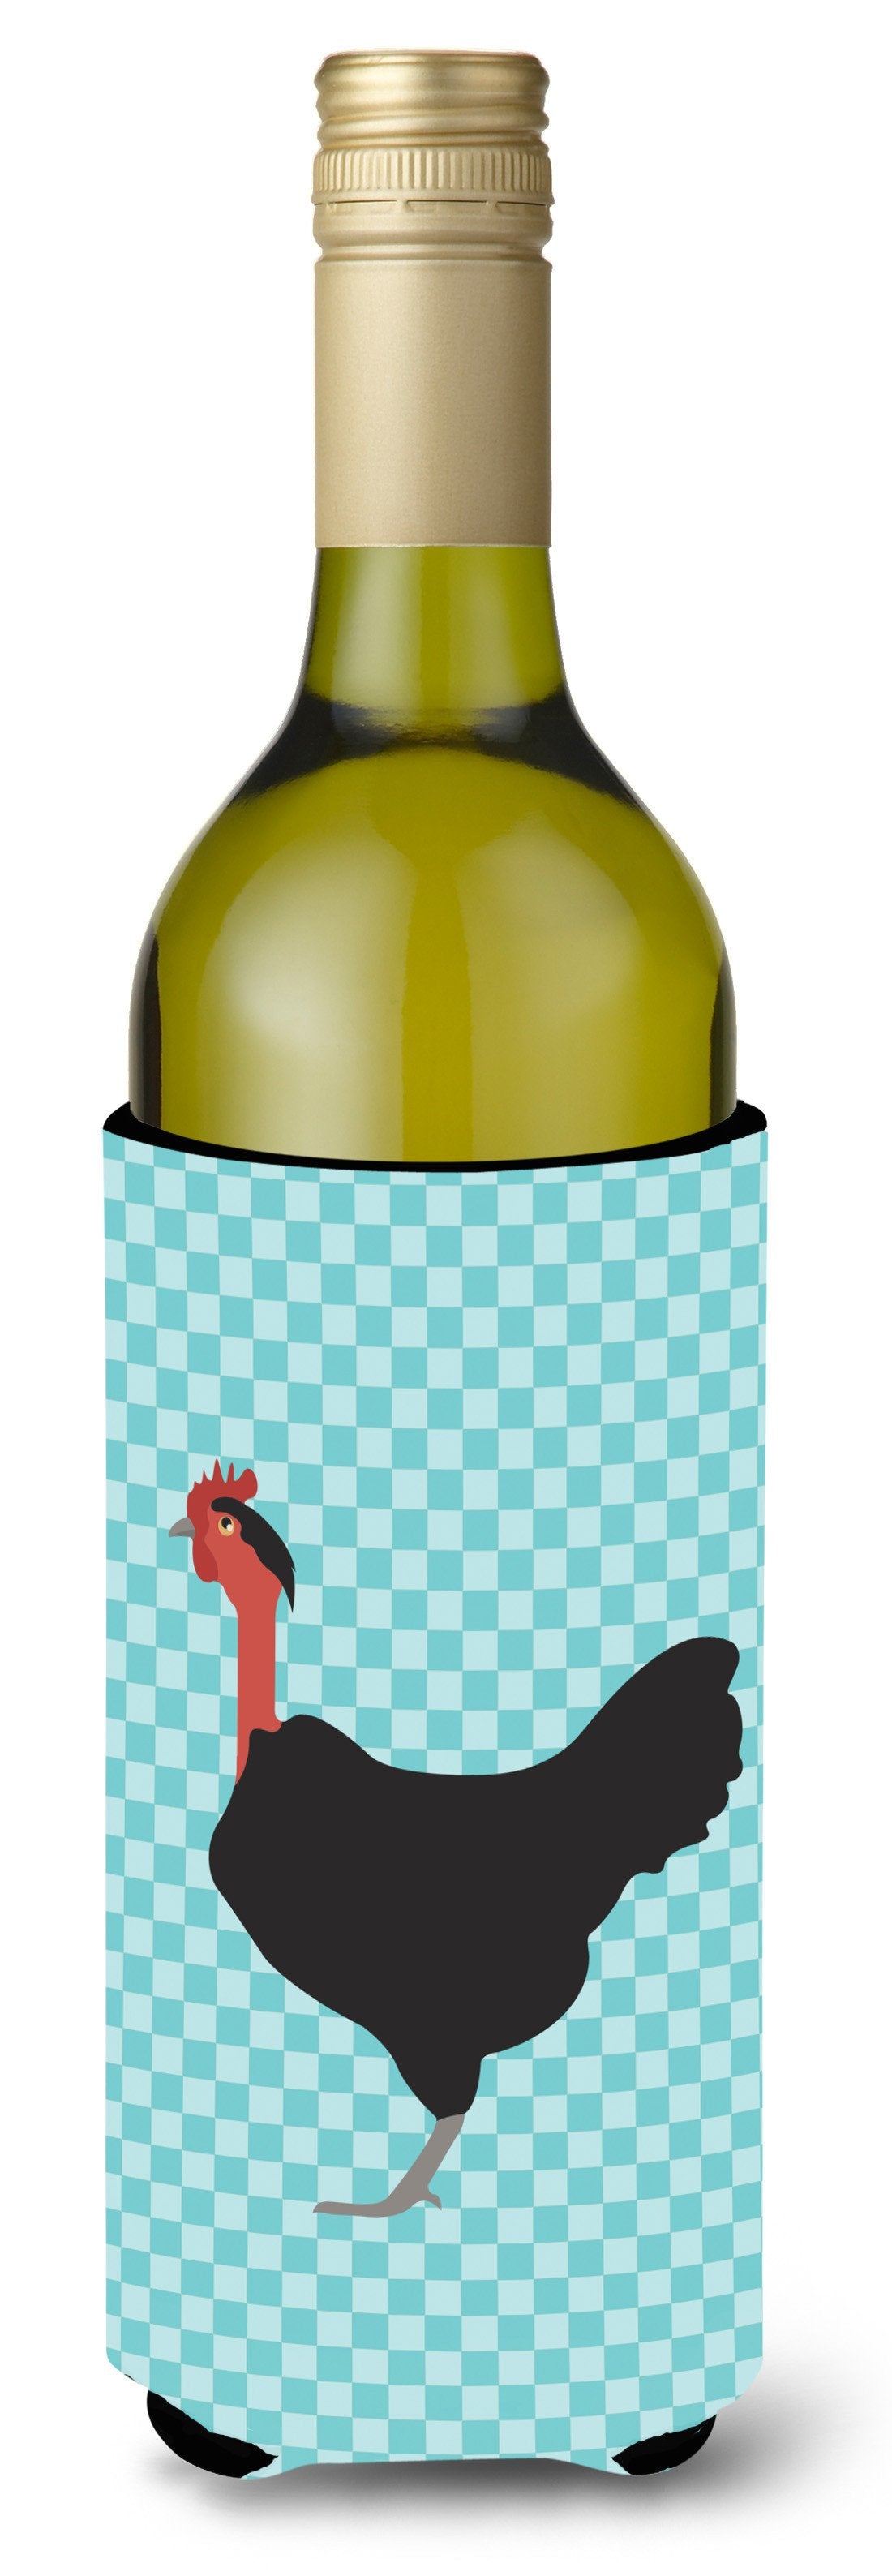 Naked Neck Chicken Blue Check Wine Bottle Beverge Insulator Hugger BB8013LITERK by Caroline's Treasures